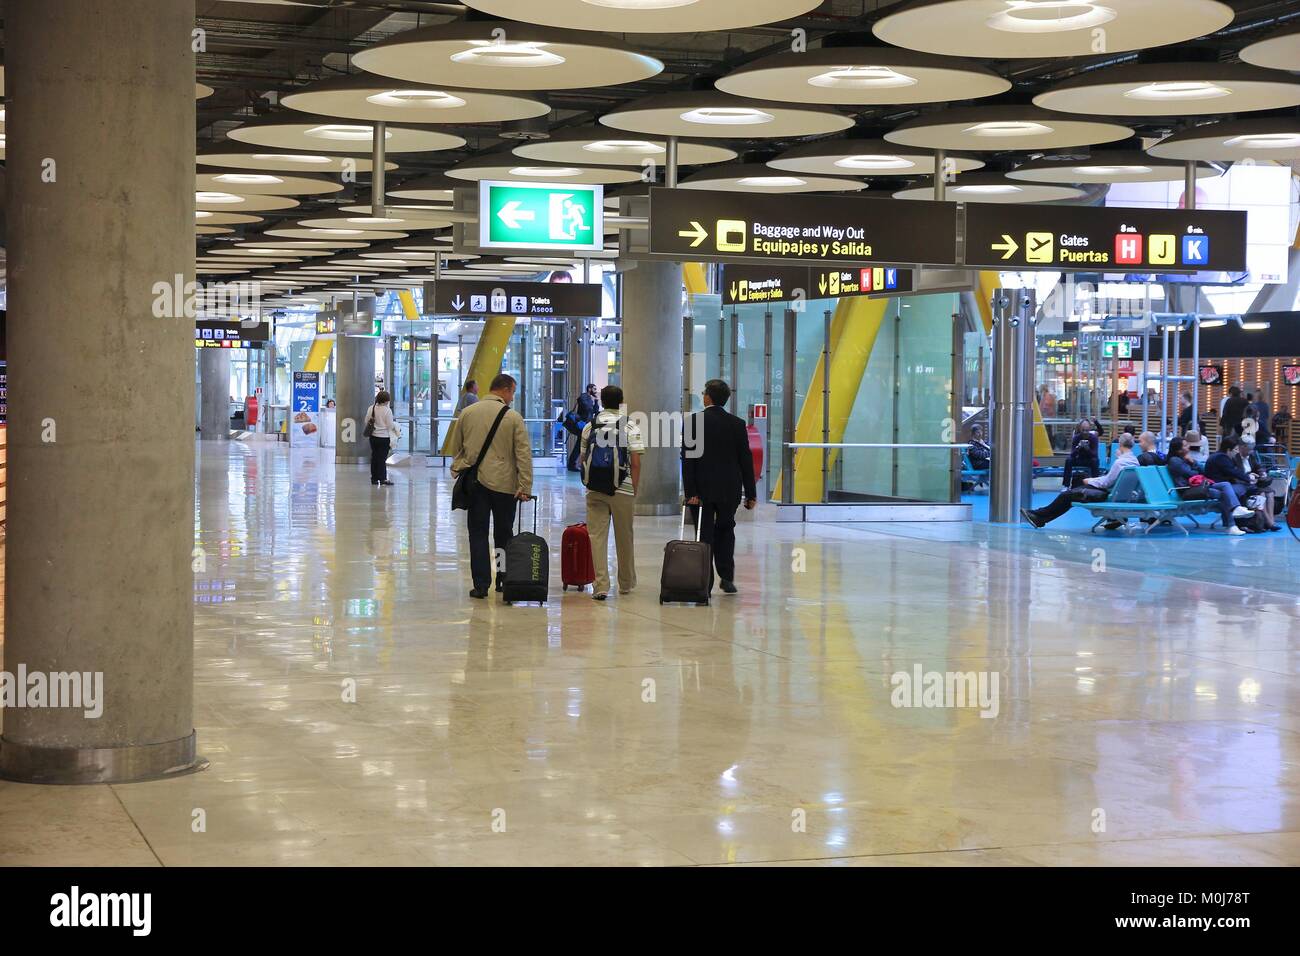 MADRID, Spagna - 20 ottobre 2014: persone fretta al Terminal 4 dell'aeroporto di Madrid Barajas. Il famoso terminale 4 è stata progettata da Antonio Lamela e Richa Foto Stock